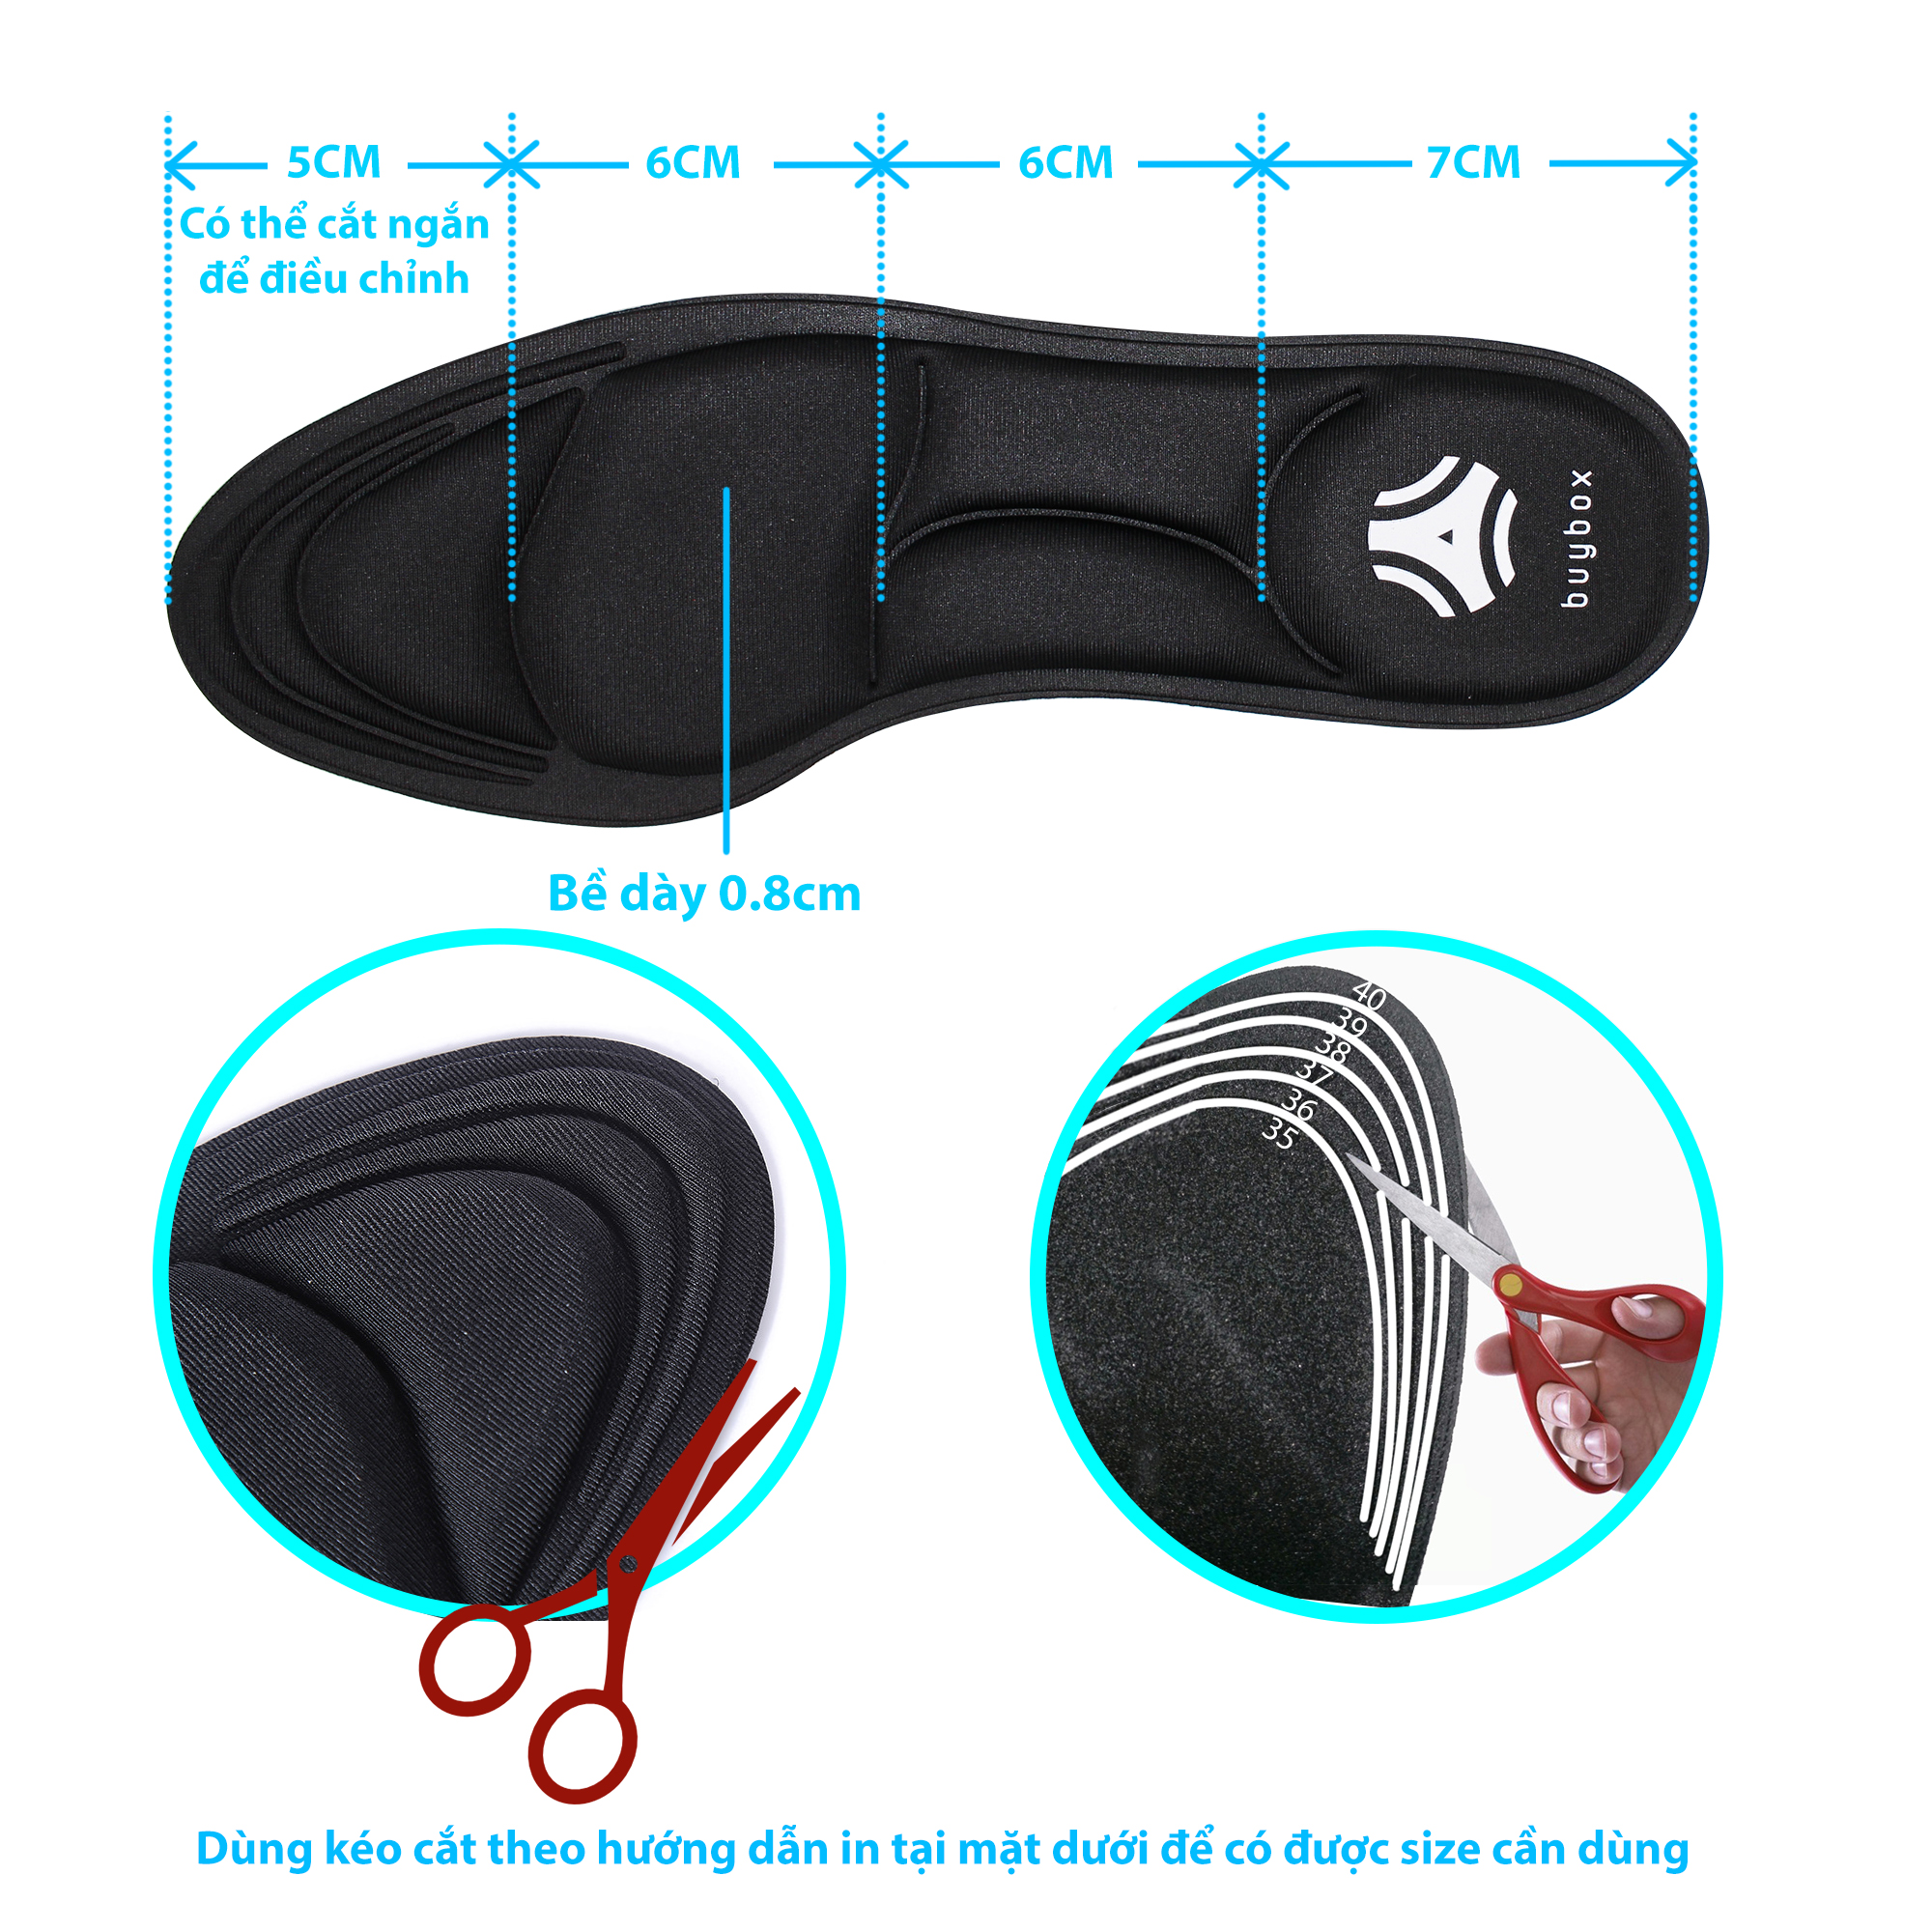 hướng dẫn sử dụng lót giày 4D buybox